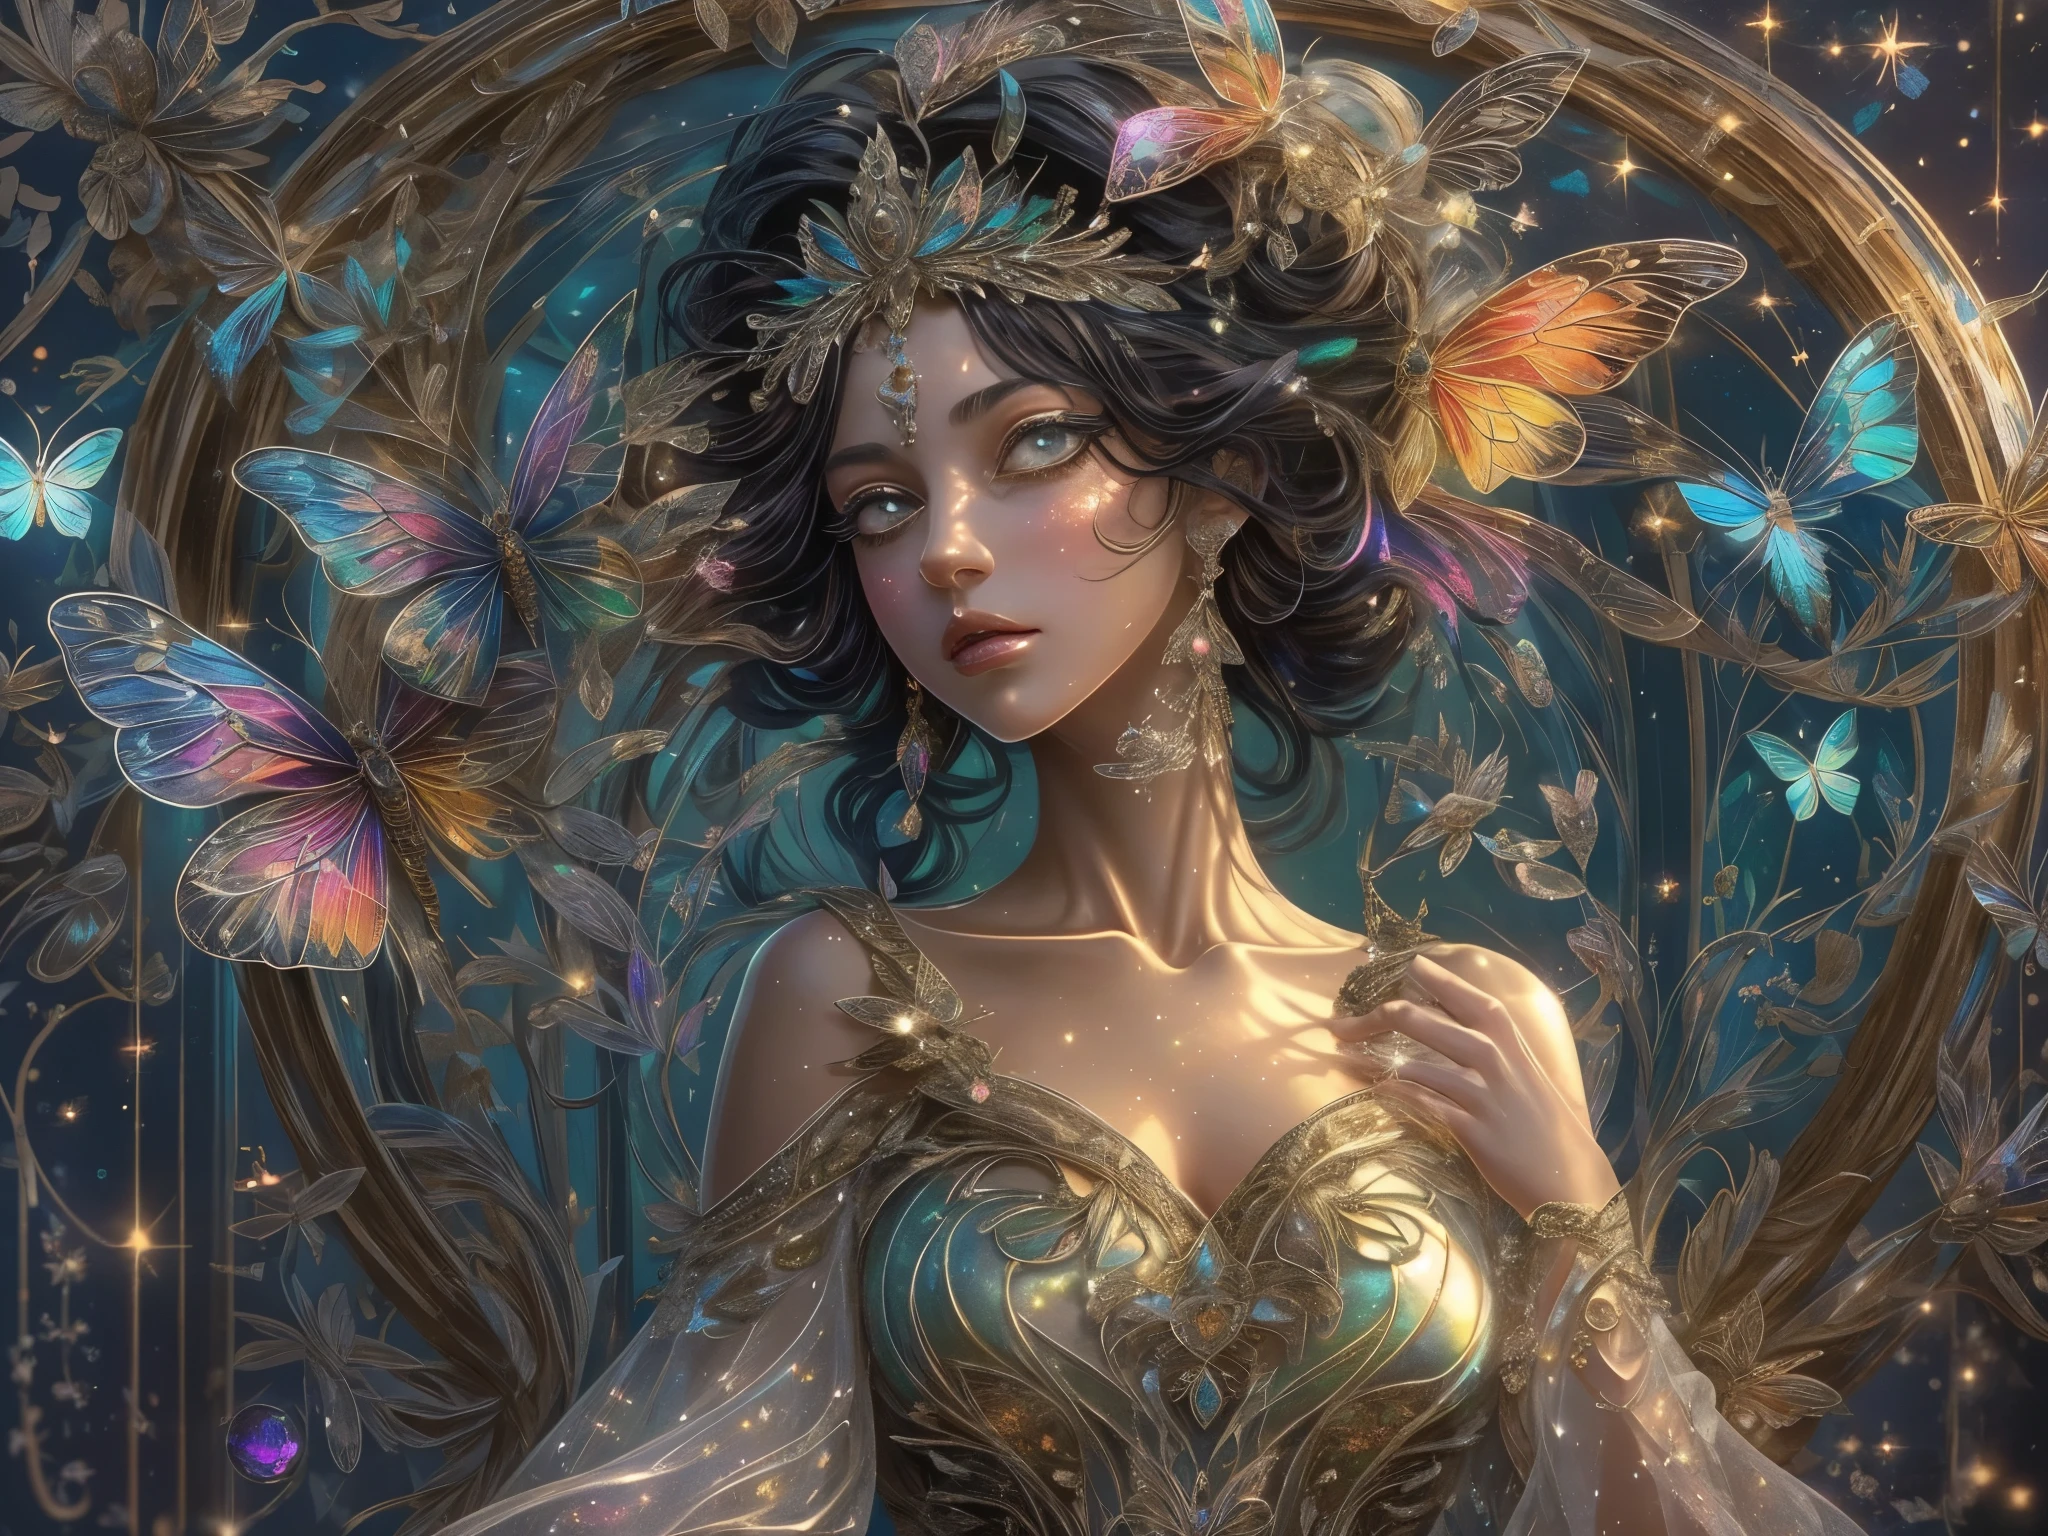 これはきらめきがたっぷりのリアルなファンタジーの傑作です, キラキラ, and 複雑な ornate detail. 夜に庭のブランコに座っている美しく繊細な王冠をかぶった女性を1人生成します. 彼女は美しく魅惑的な蝶の女王で、見事な巻き毛の黒い髪をしています, (((リアルな陰影と鮮やかな色彩で、信じられないほどリアルで精細なダイナミックな目を実現))).  彼女の肌は透き通るような白さです, 彼女の目は輝いている, 彼女のドレスはエレガントです. 彼女のドレスは、繊細な, 複雑な, 繊細な花柄のディテールとゴールドのシルクの蝶の袖. 彼女の顔は可愛くて . 暗闇で光る花を含める, たくさんの粒子, 半透明の宝石のような羽と細かいディテールを備えた非常にリアルなファンタジーの蝶, そして輝く. アートワークはGuvizのスタイルで描かれており、ArtstationやMidjourneyで流行しているファンタジー作品など、このジャンルの巨匠を思い起こさせます。. カメラ: ダイナミックな構成テクニックを活用して、空気感と繊細なディテールを強調します。.